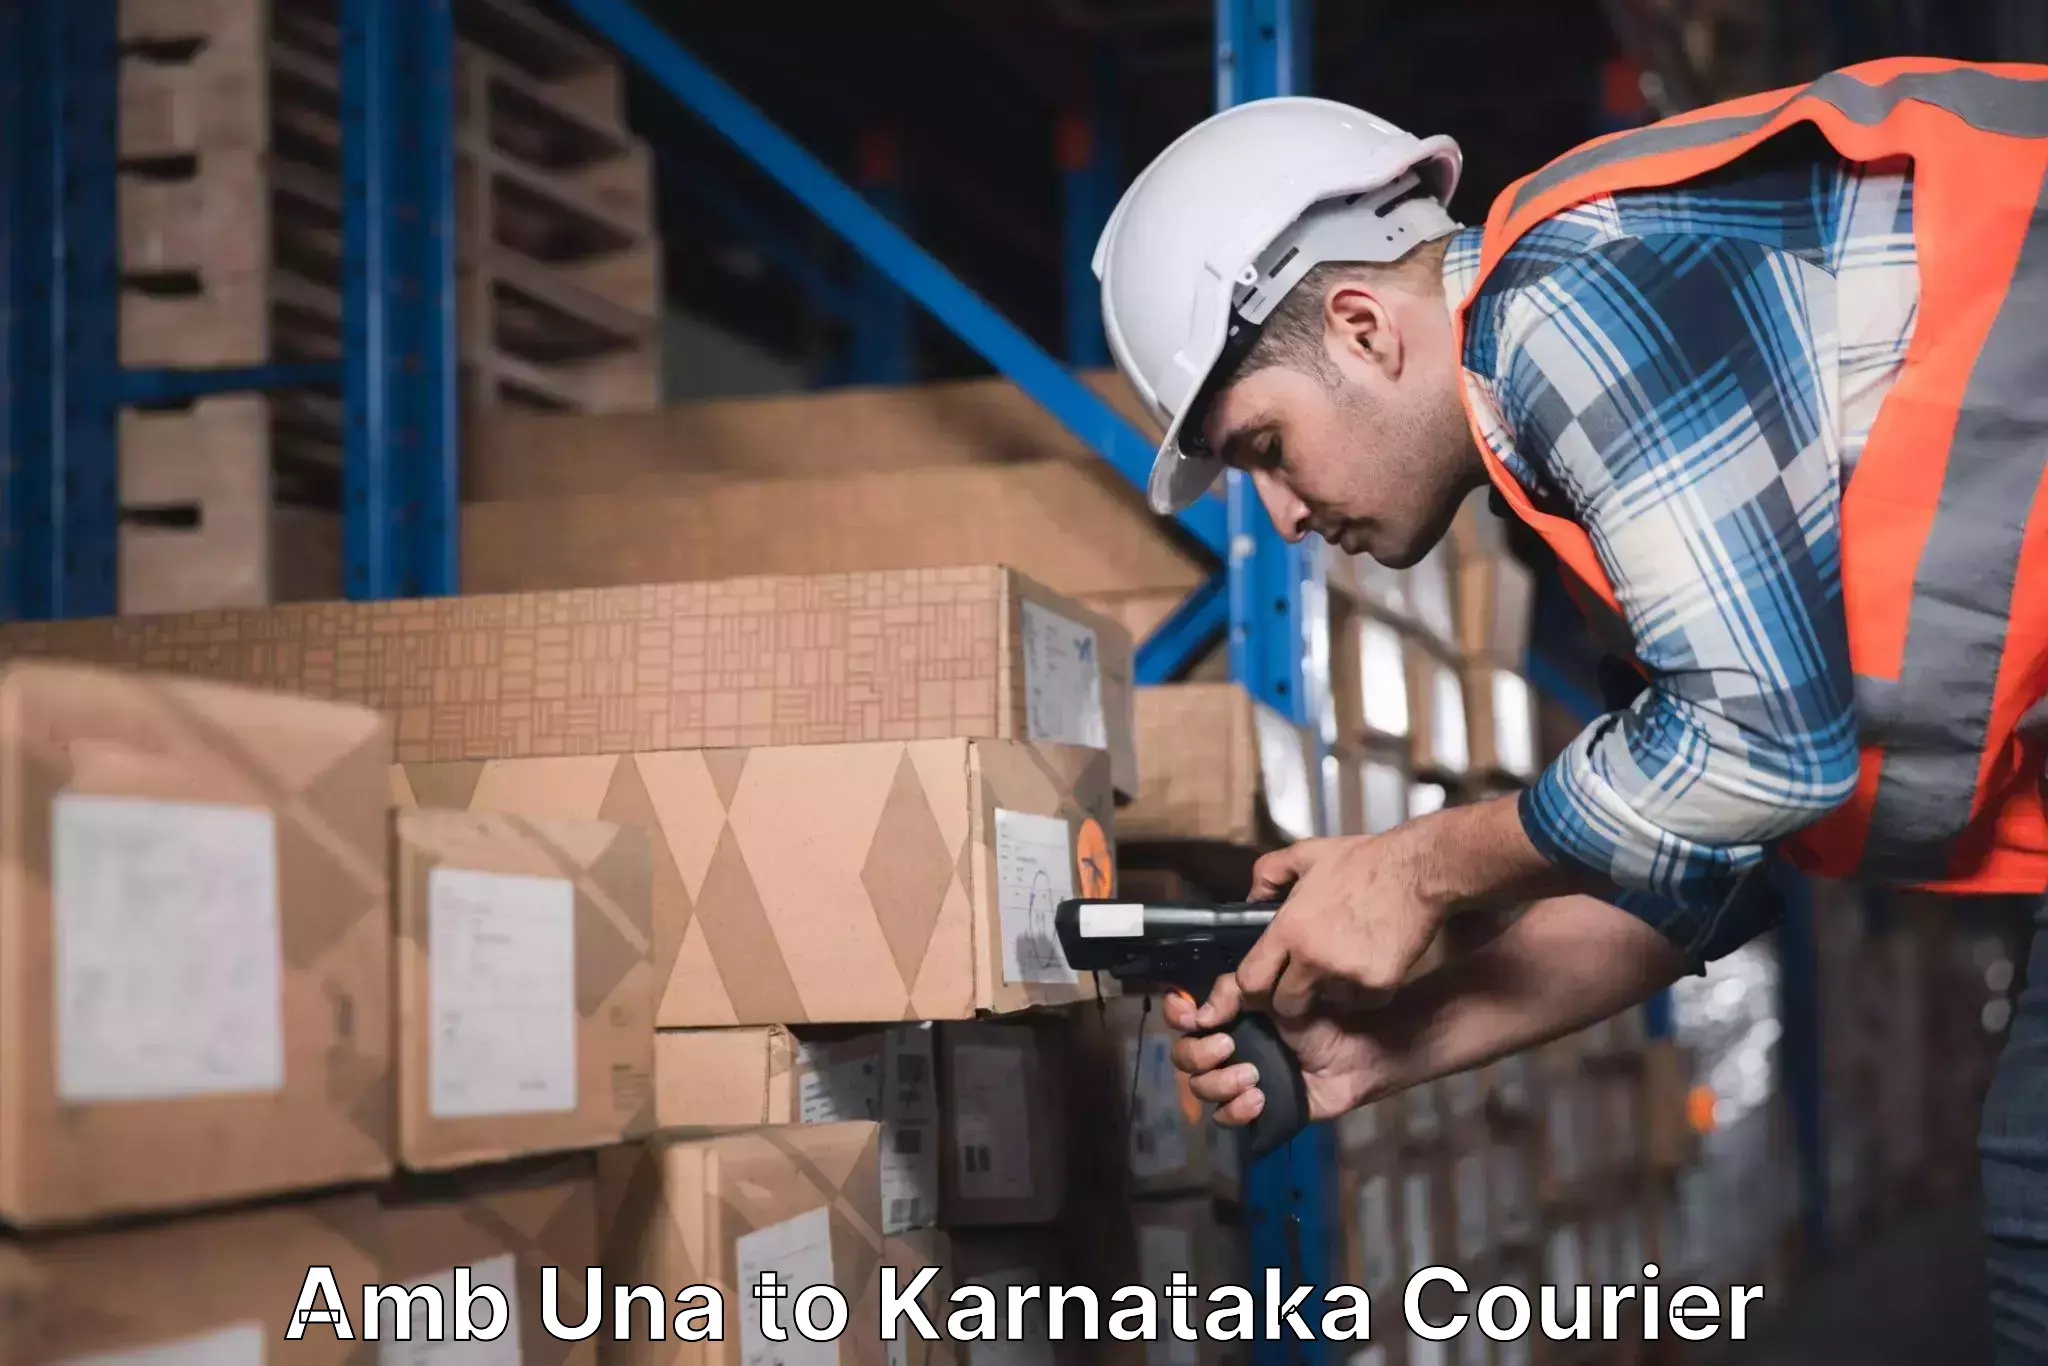 Urban courier service Amb Una to Karnataka